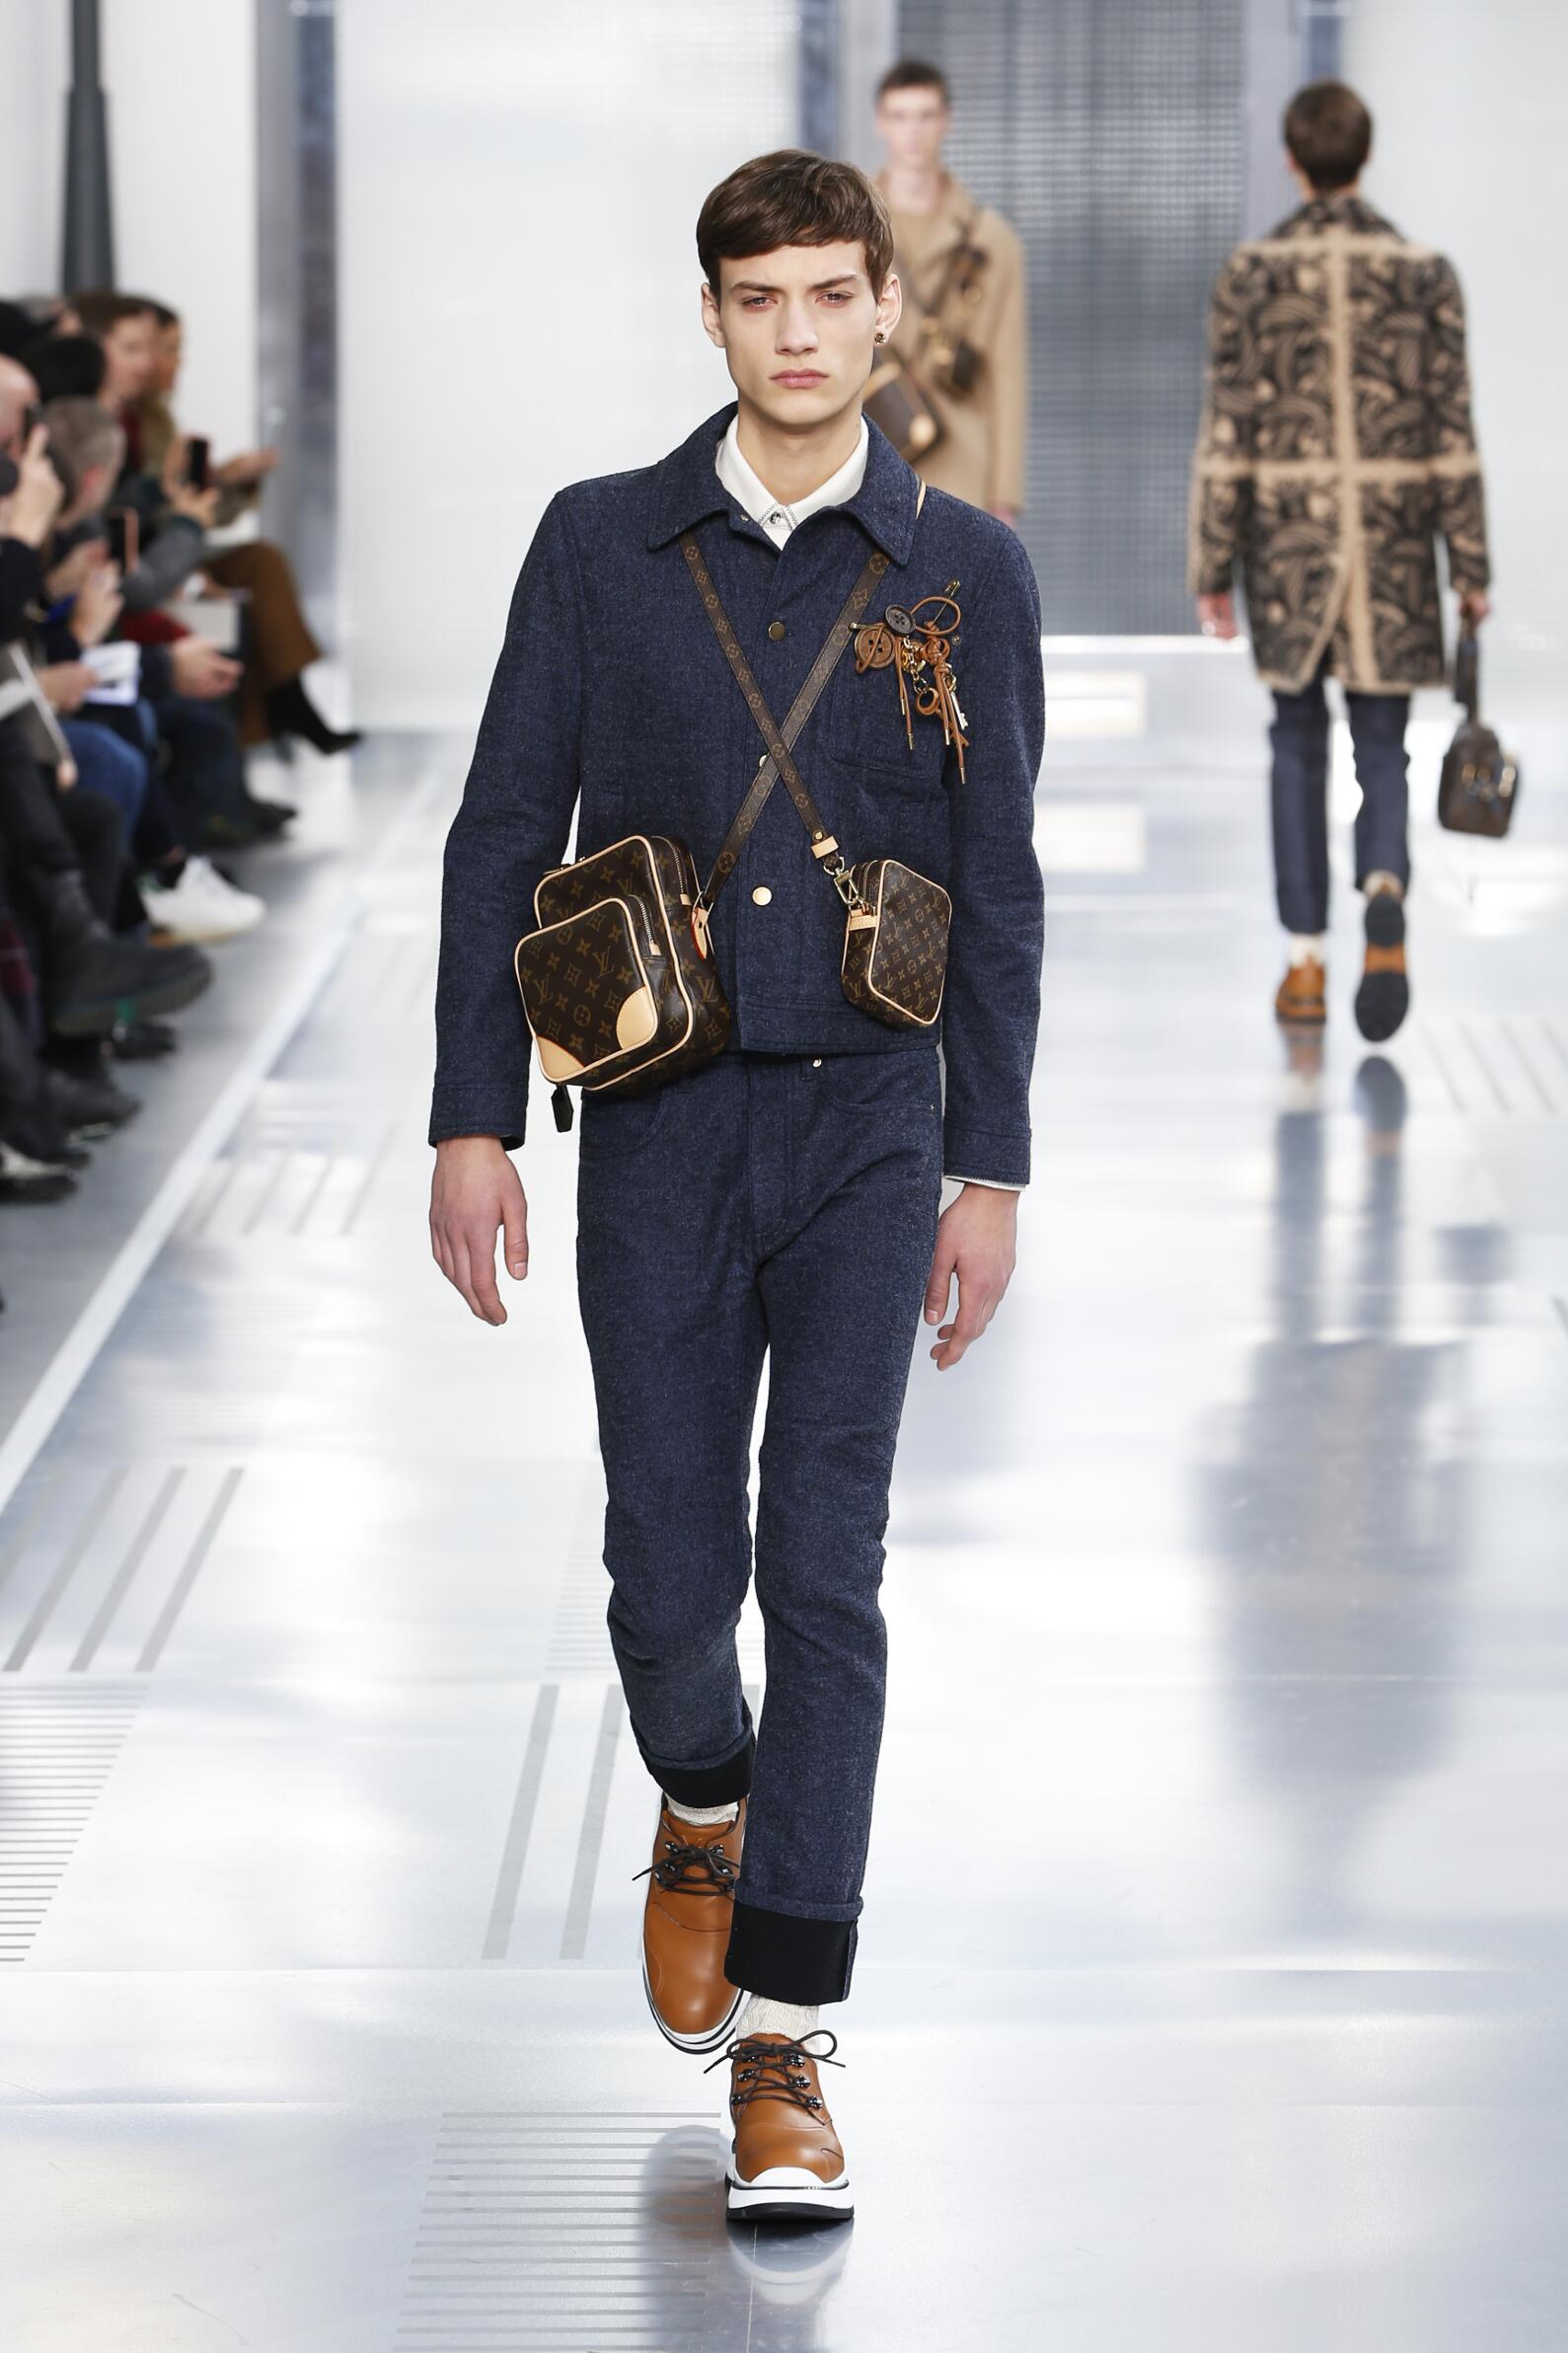 Pre-Owned Louis Vuitton Bags for Men - Vintage - FARFETCH